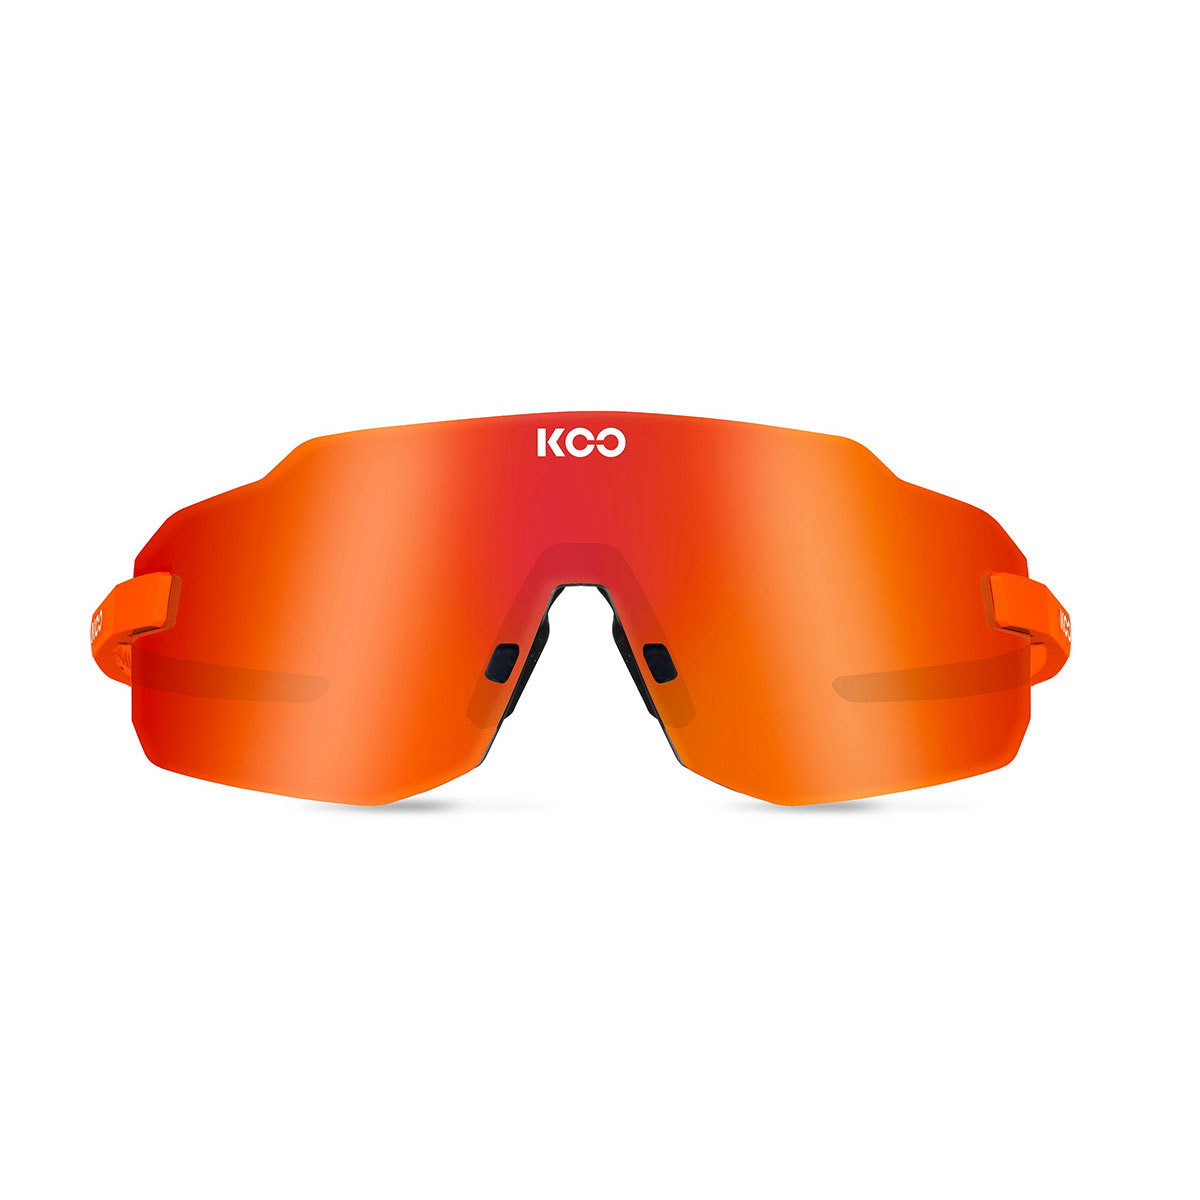 KOO SUPERNOVA Sport Zonnebril Fluo Oranje met Red Mirror Lens